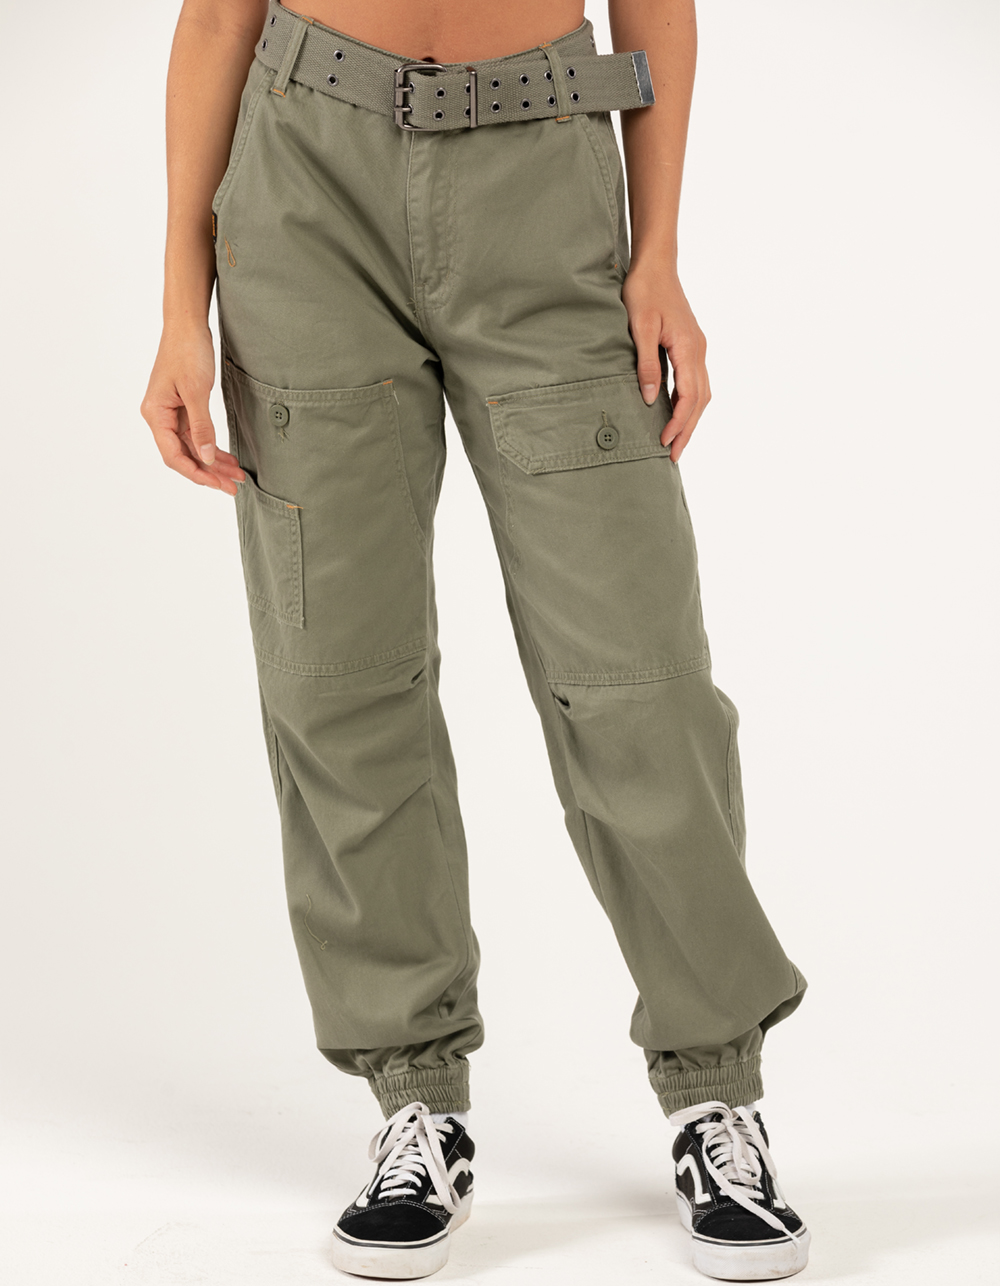 Women's Pants - Cargo Pants, Joggers, Linen Pants – The Vault Clothing Co.